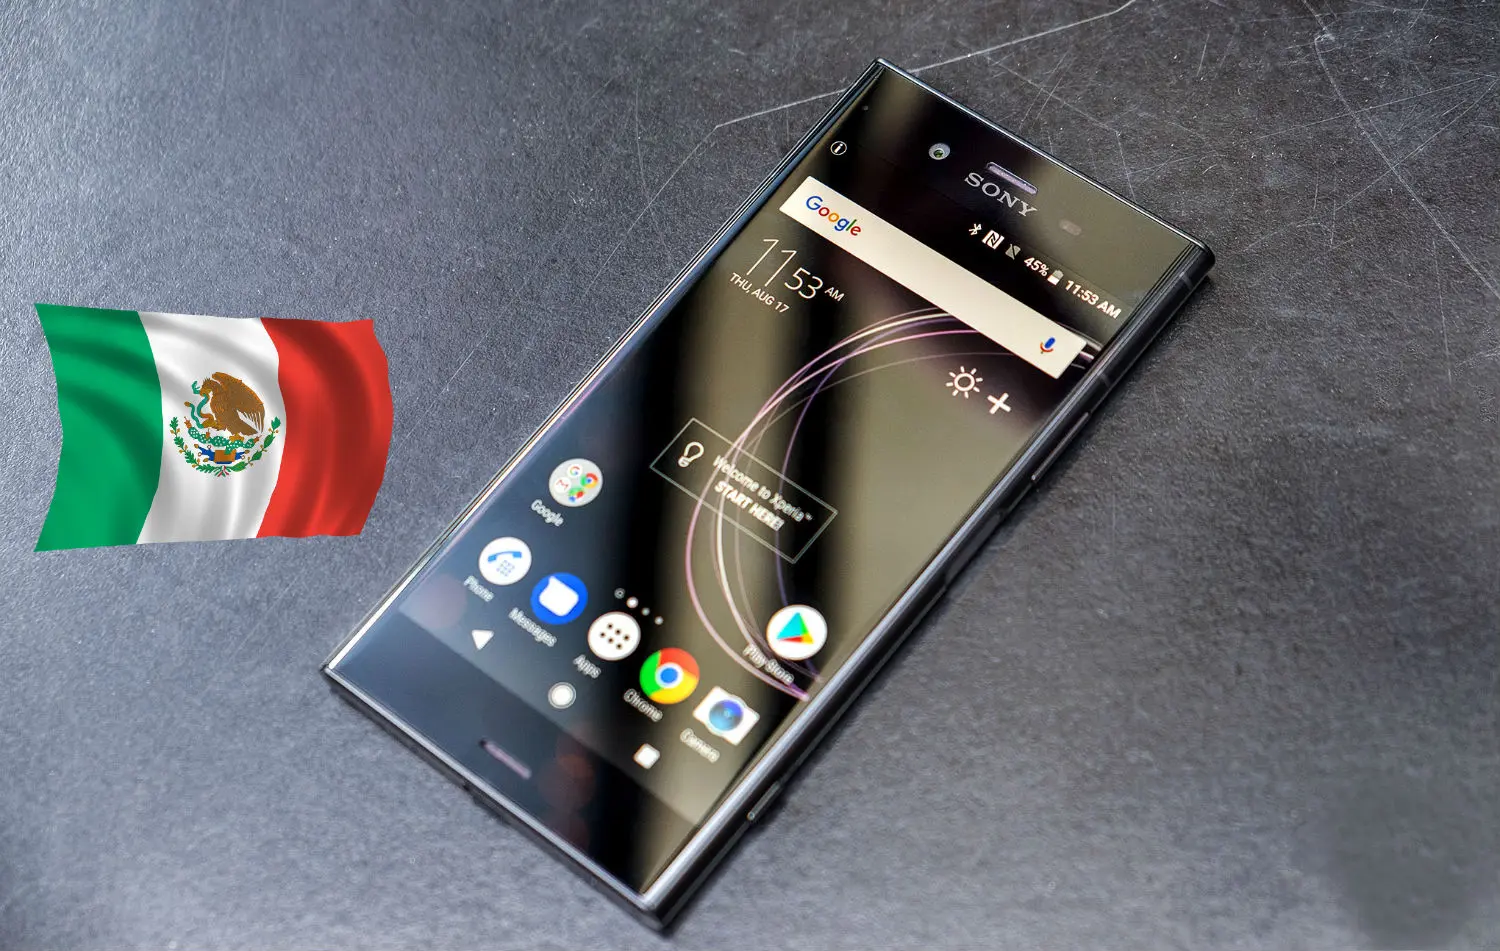 Oficial: Sony Mobile finalmente desaparece tras bajas ventas de smartphones